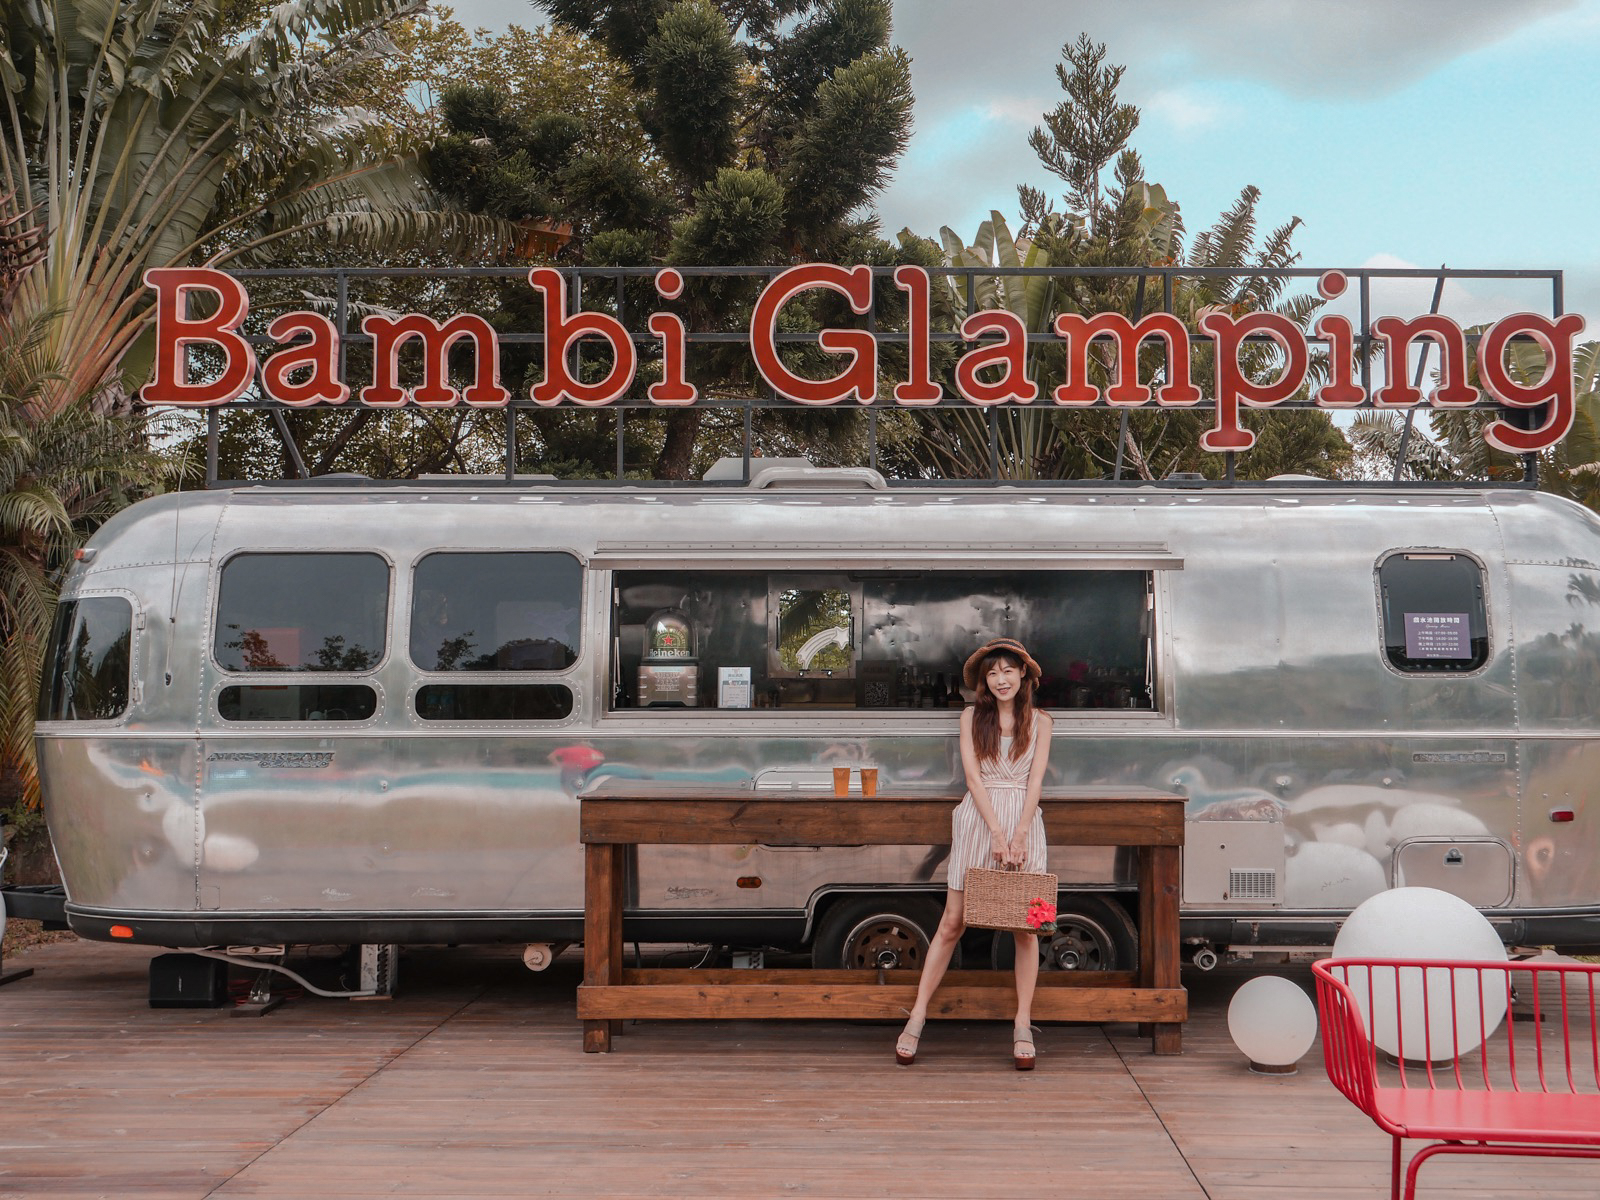 斑比跳跳豪華露營 一泊四食和牛龍蝦 頂級露營車設備 最舒適的露營體驗